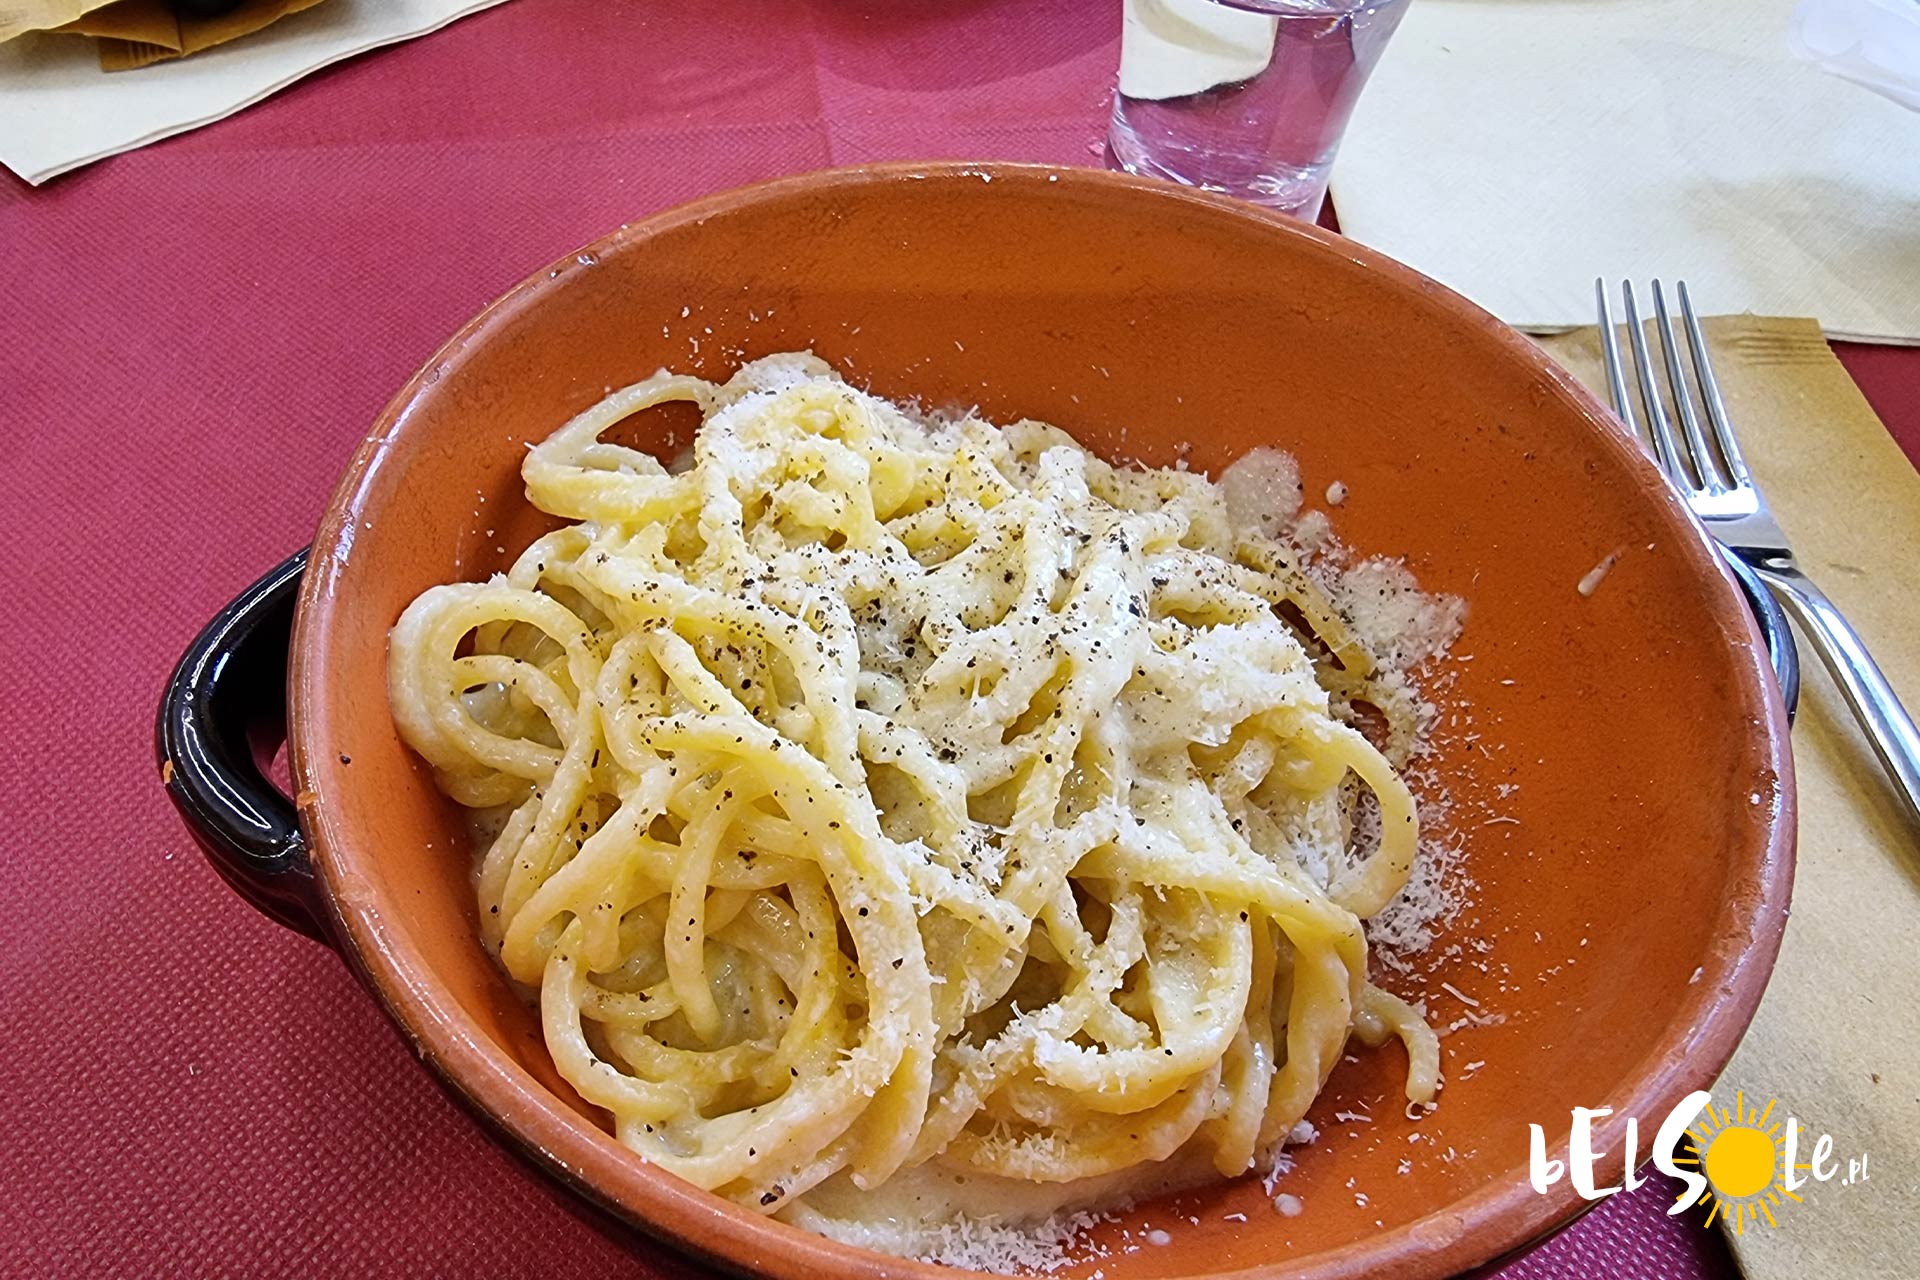 tanie jedzenie w Rzymie